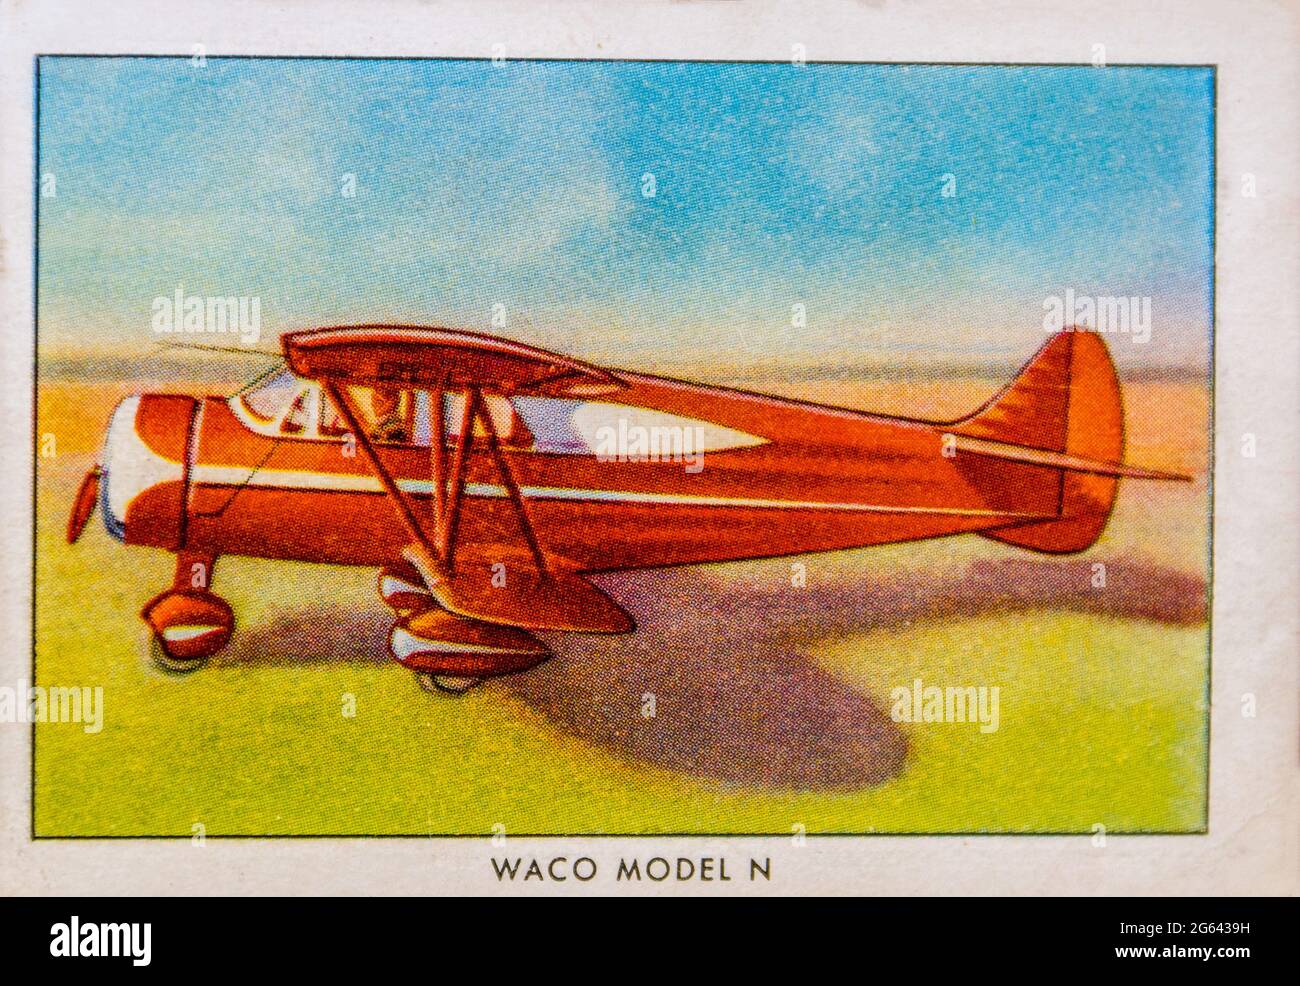 Ein Waco Model N auf einer Zigarettenkarte von Battered Wings aus einem Set des Veteranen der US Navy, der um den Globus gereist ist. Stockfoto